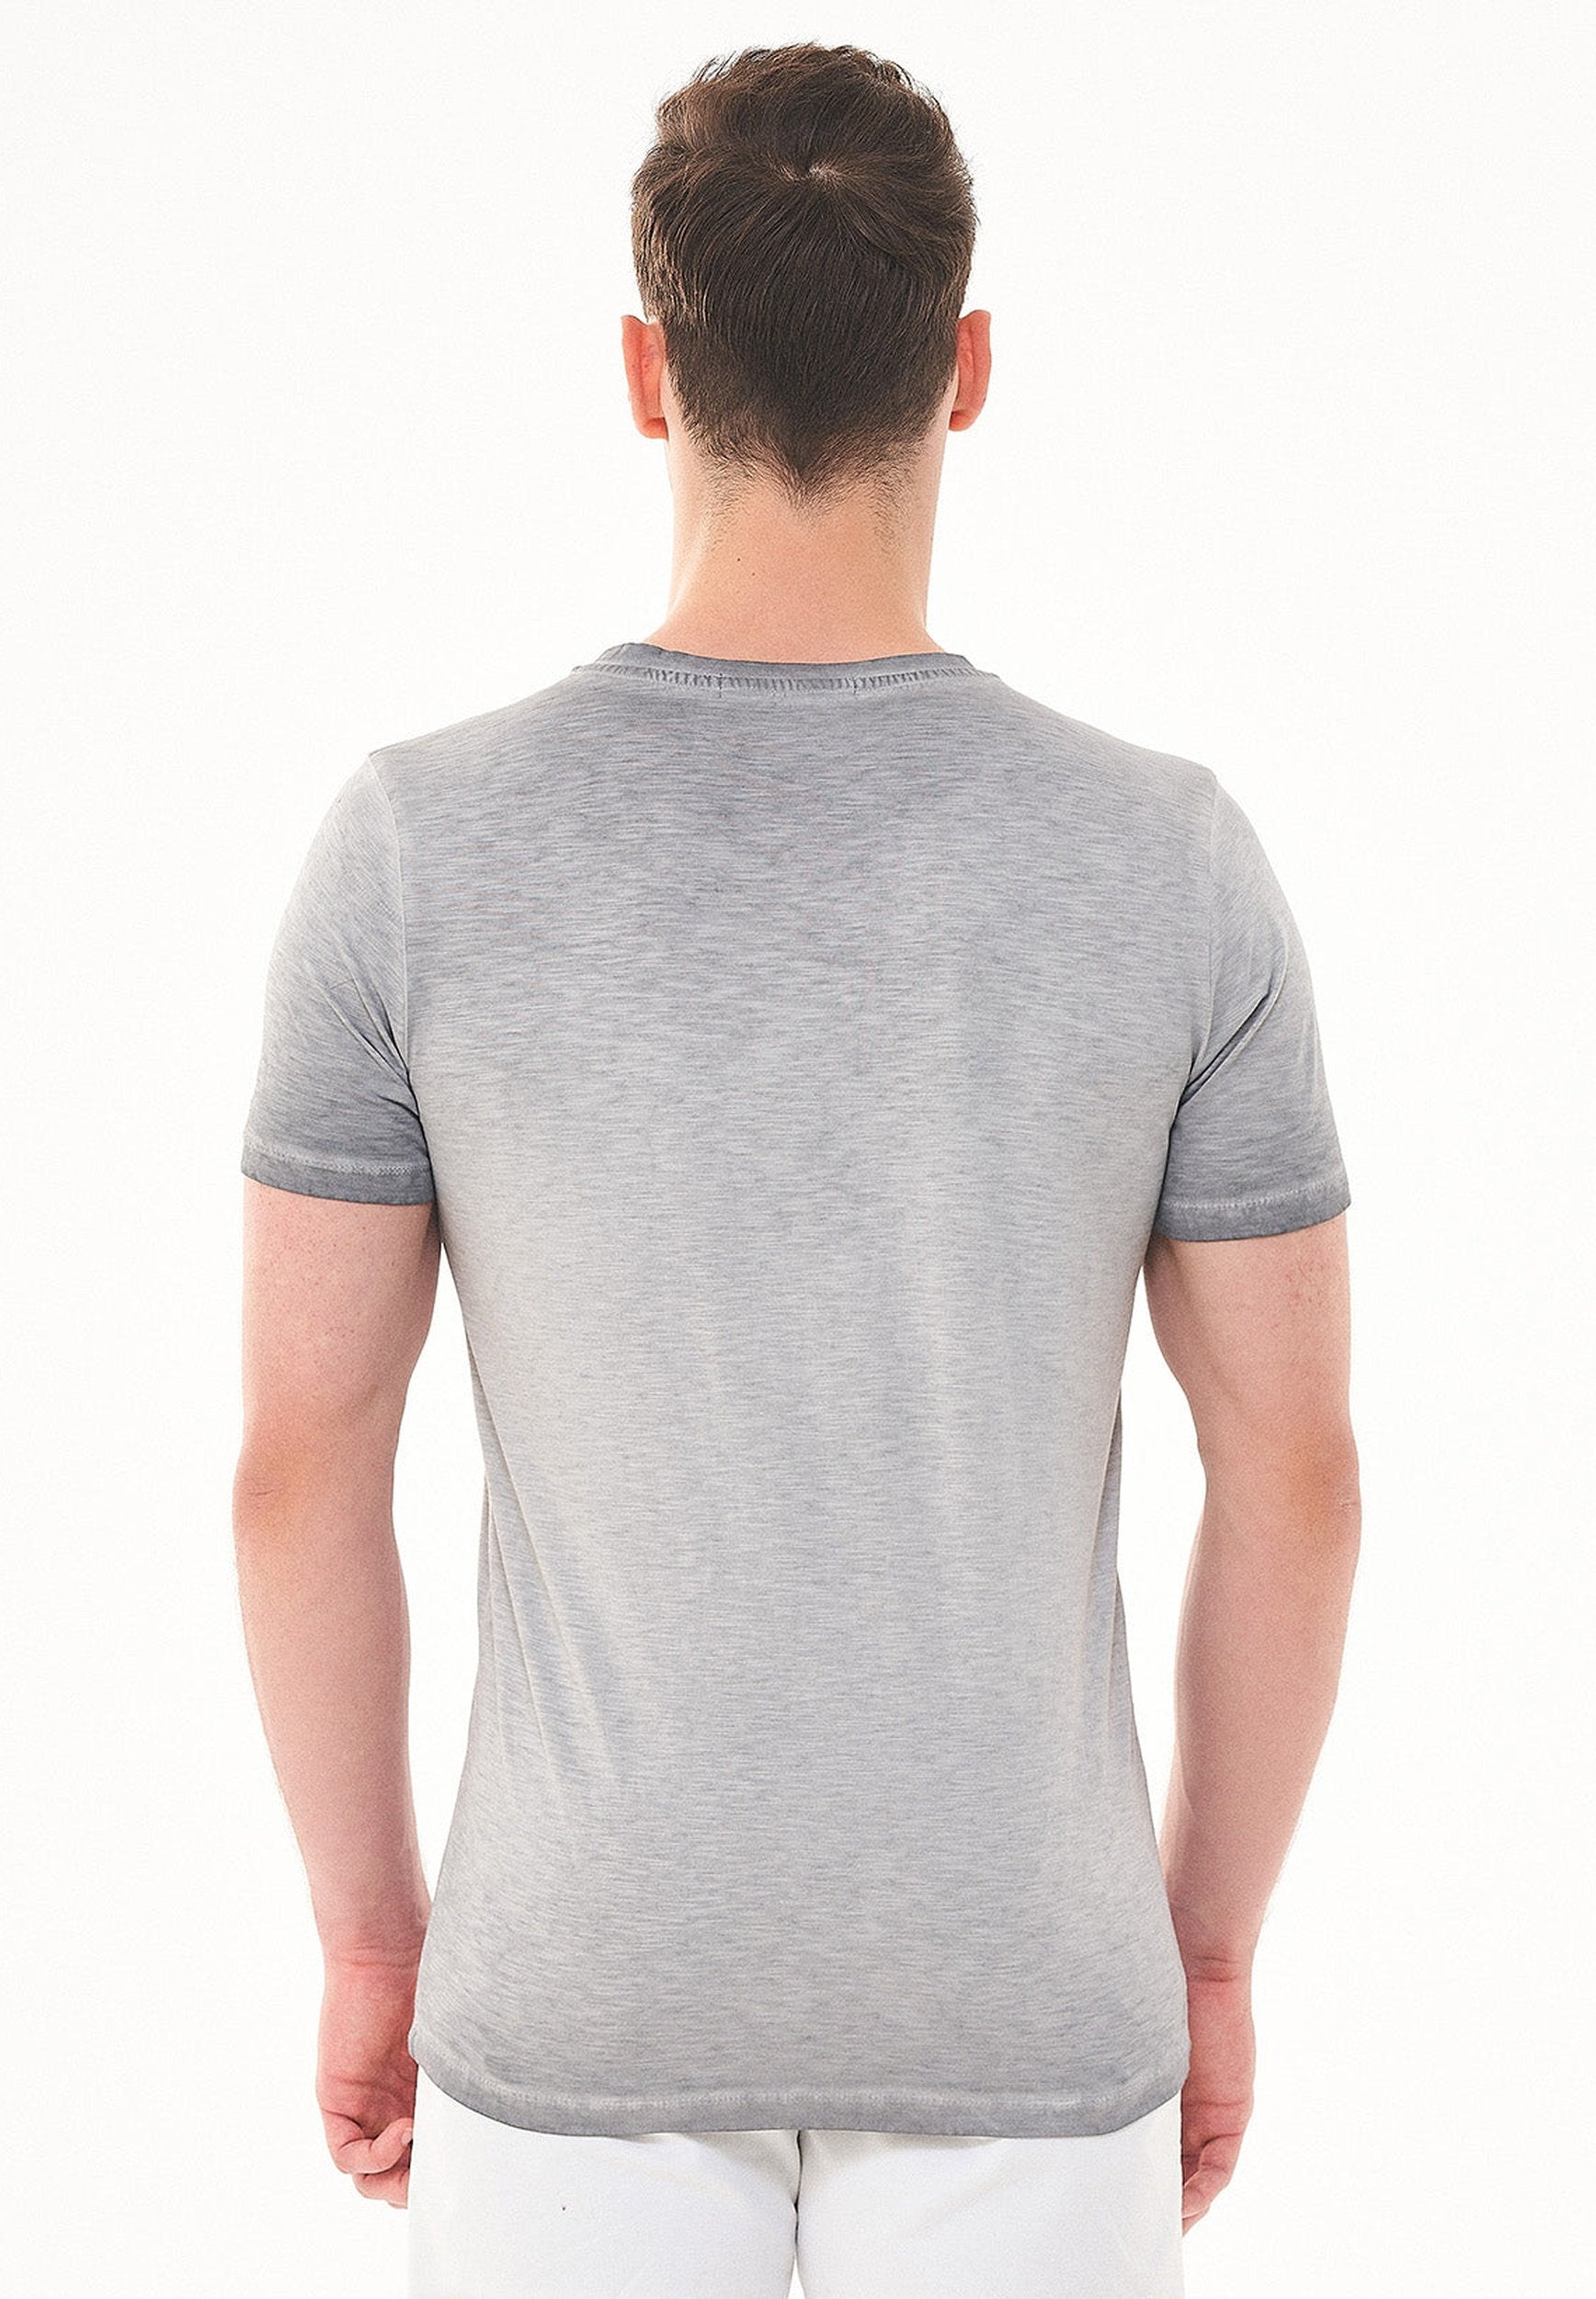 Garment Dyed T-Shirt aus Bio-Baumwolle mit Bär-Print